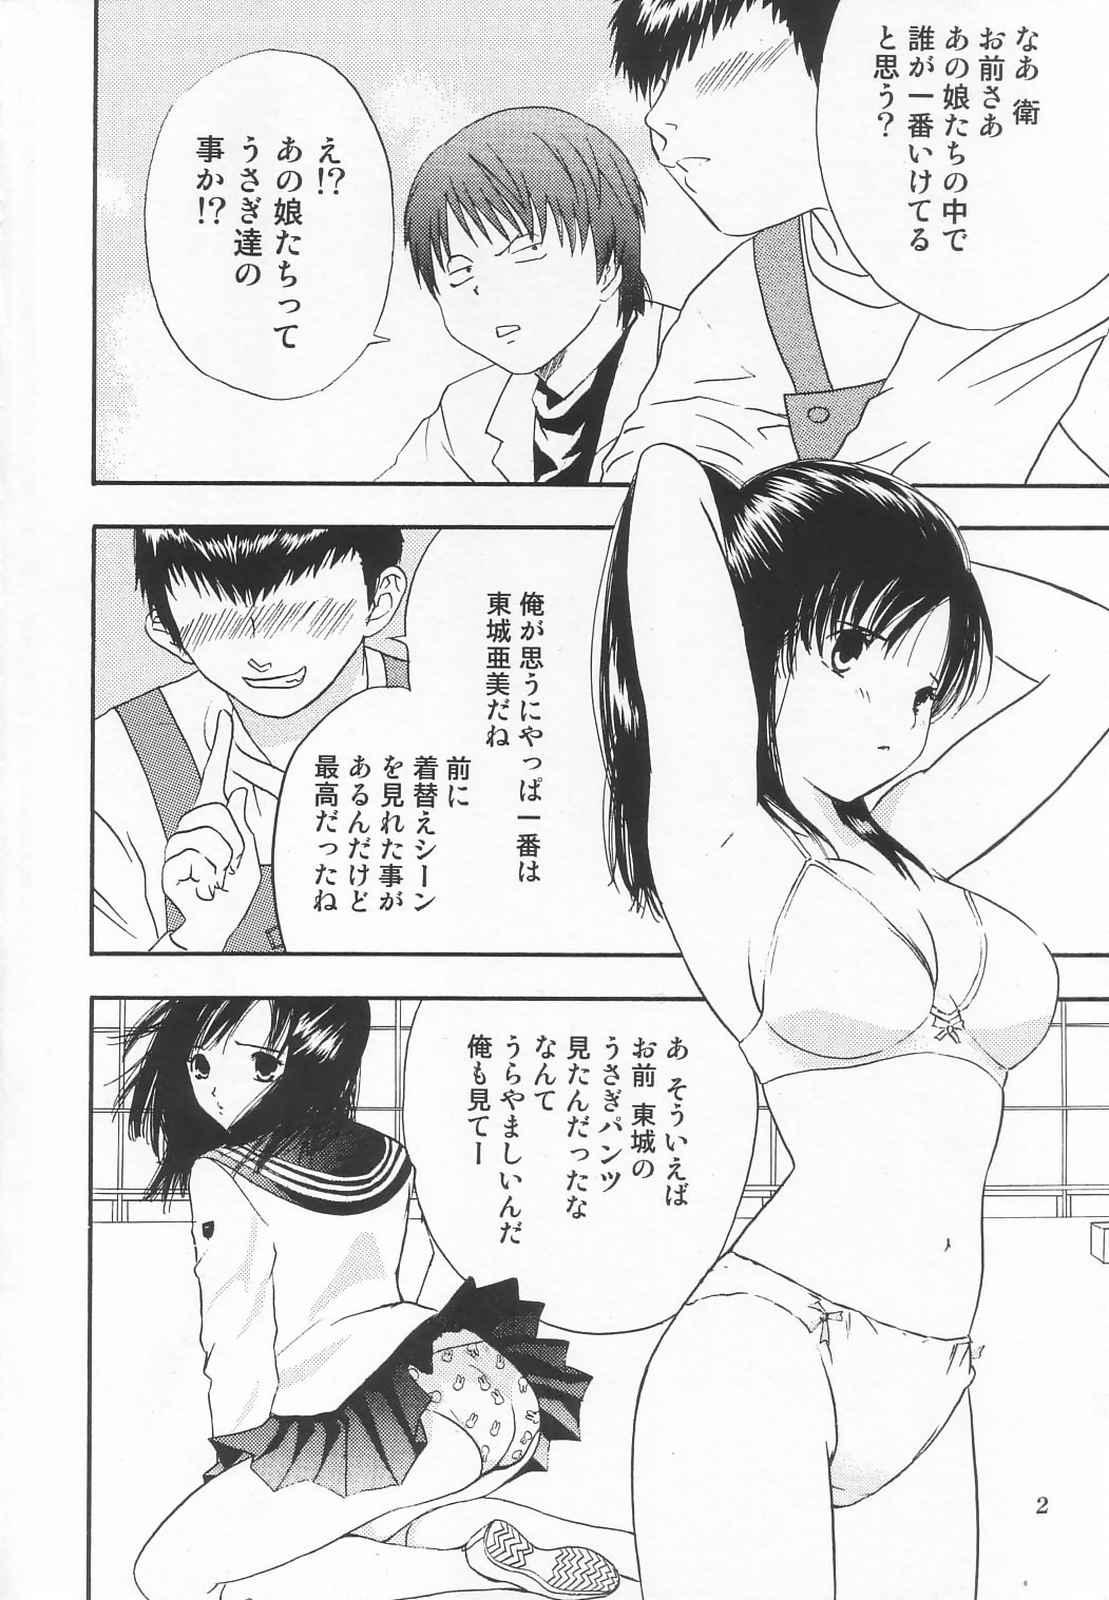 Storyline Tokusatsu Magazine x 2003 Fuyu Gou - Sailor moon Ichigo 100 Hot Pussy - Page 4